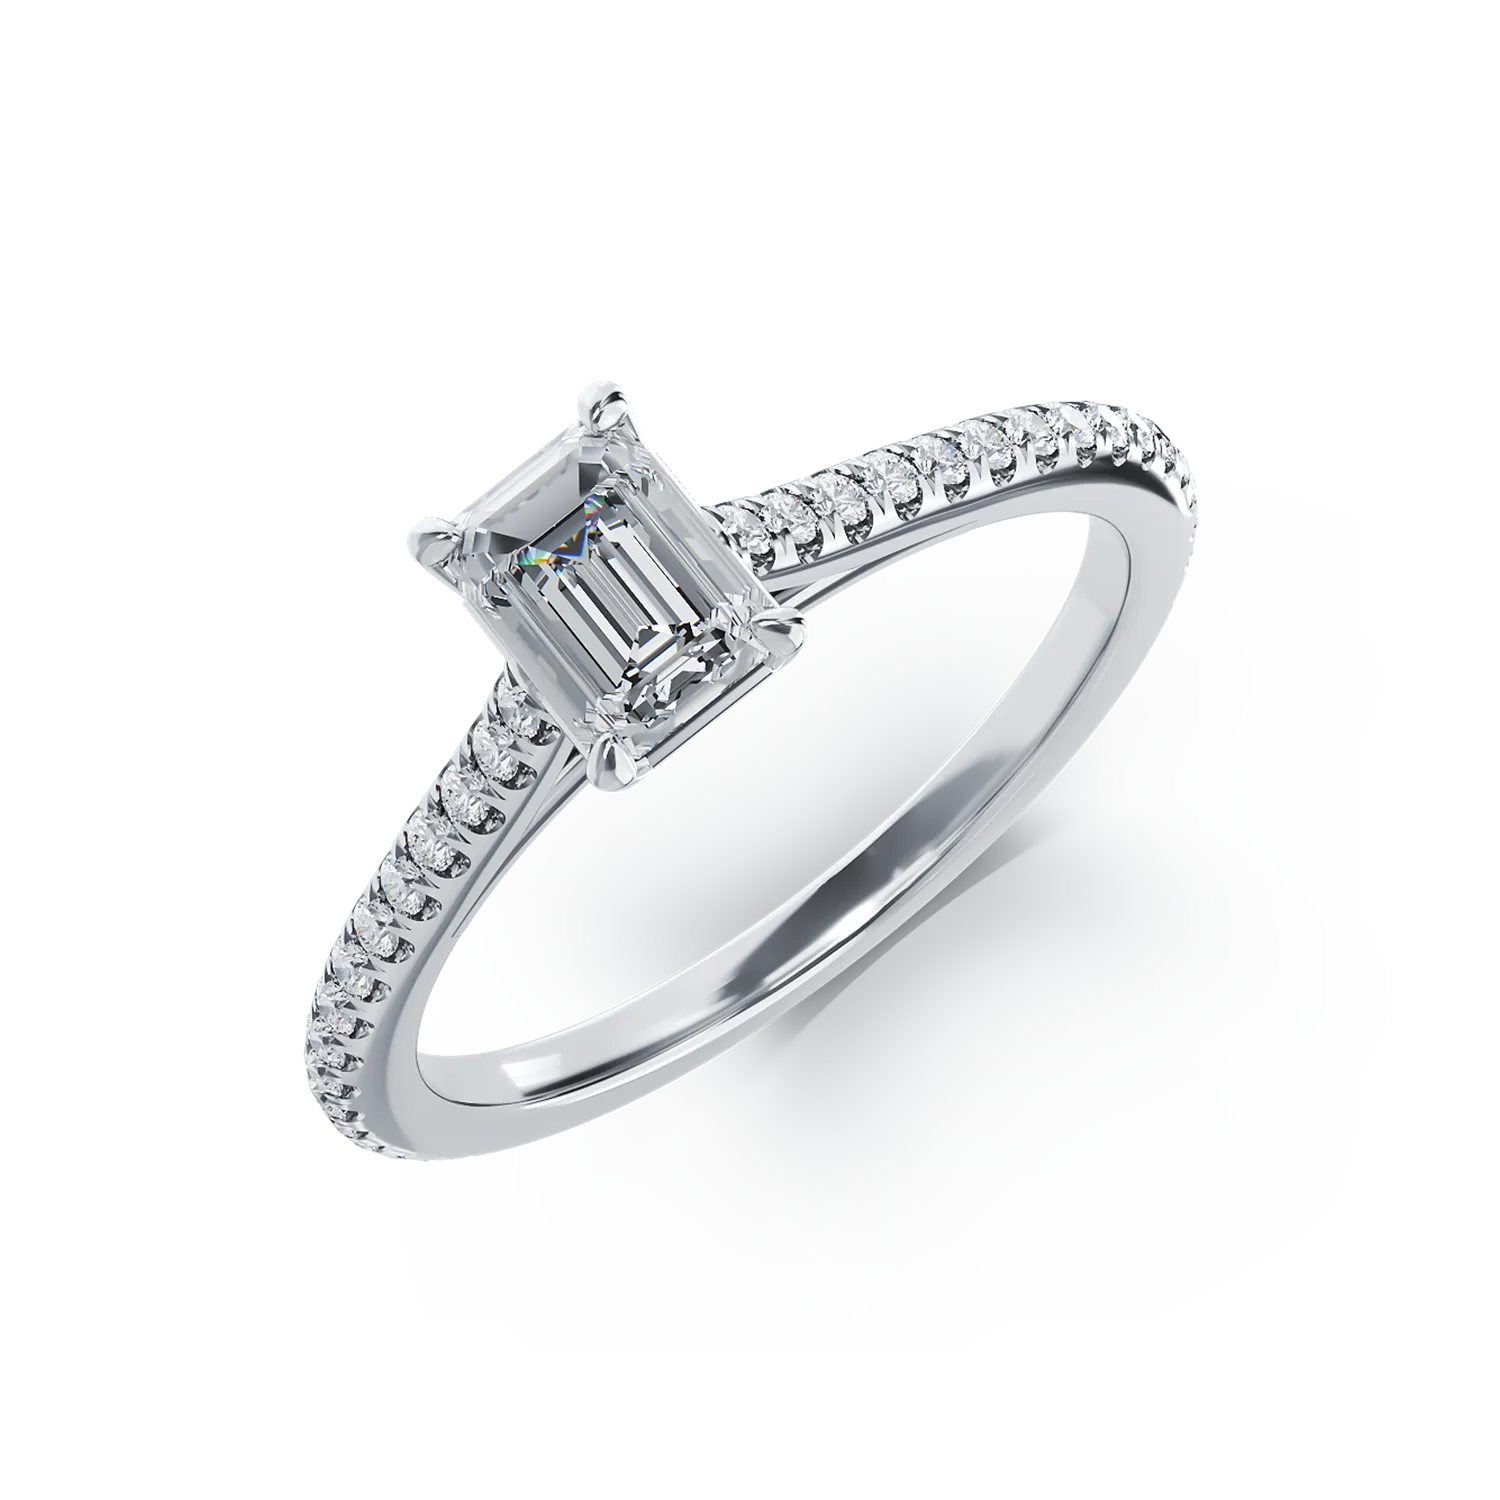 Eljegyzési gyűrű platinából 0.6ct gyémánttal és 0.185ct gyémántokkal